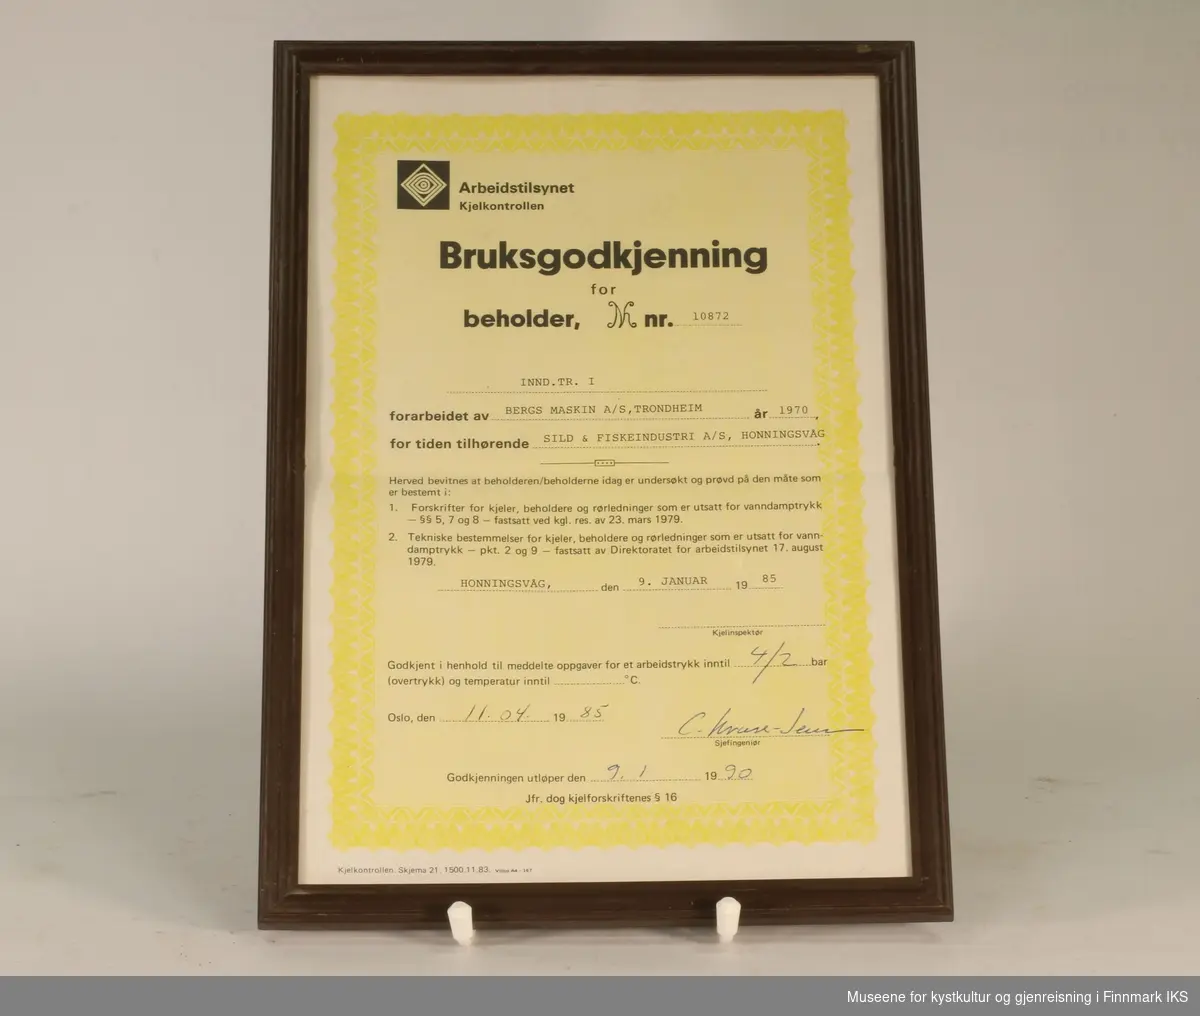 Bruksgodkjenning for INND. TR. I (beholder nr. 10872) hos Sild & Fiskeindustri AS, utsendt av Arbeidstilsynet Kjelkontrollen i 1985. Hvitt og gult papir med sort tekst. Utfylt for hånd. Innrammet.